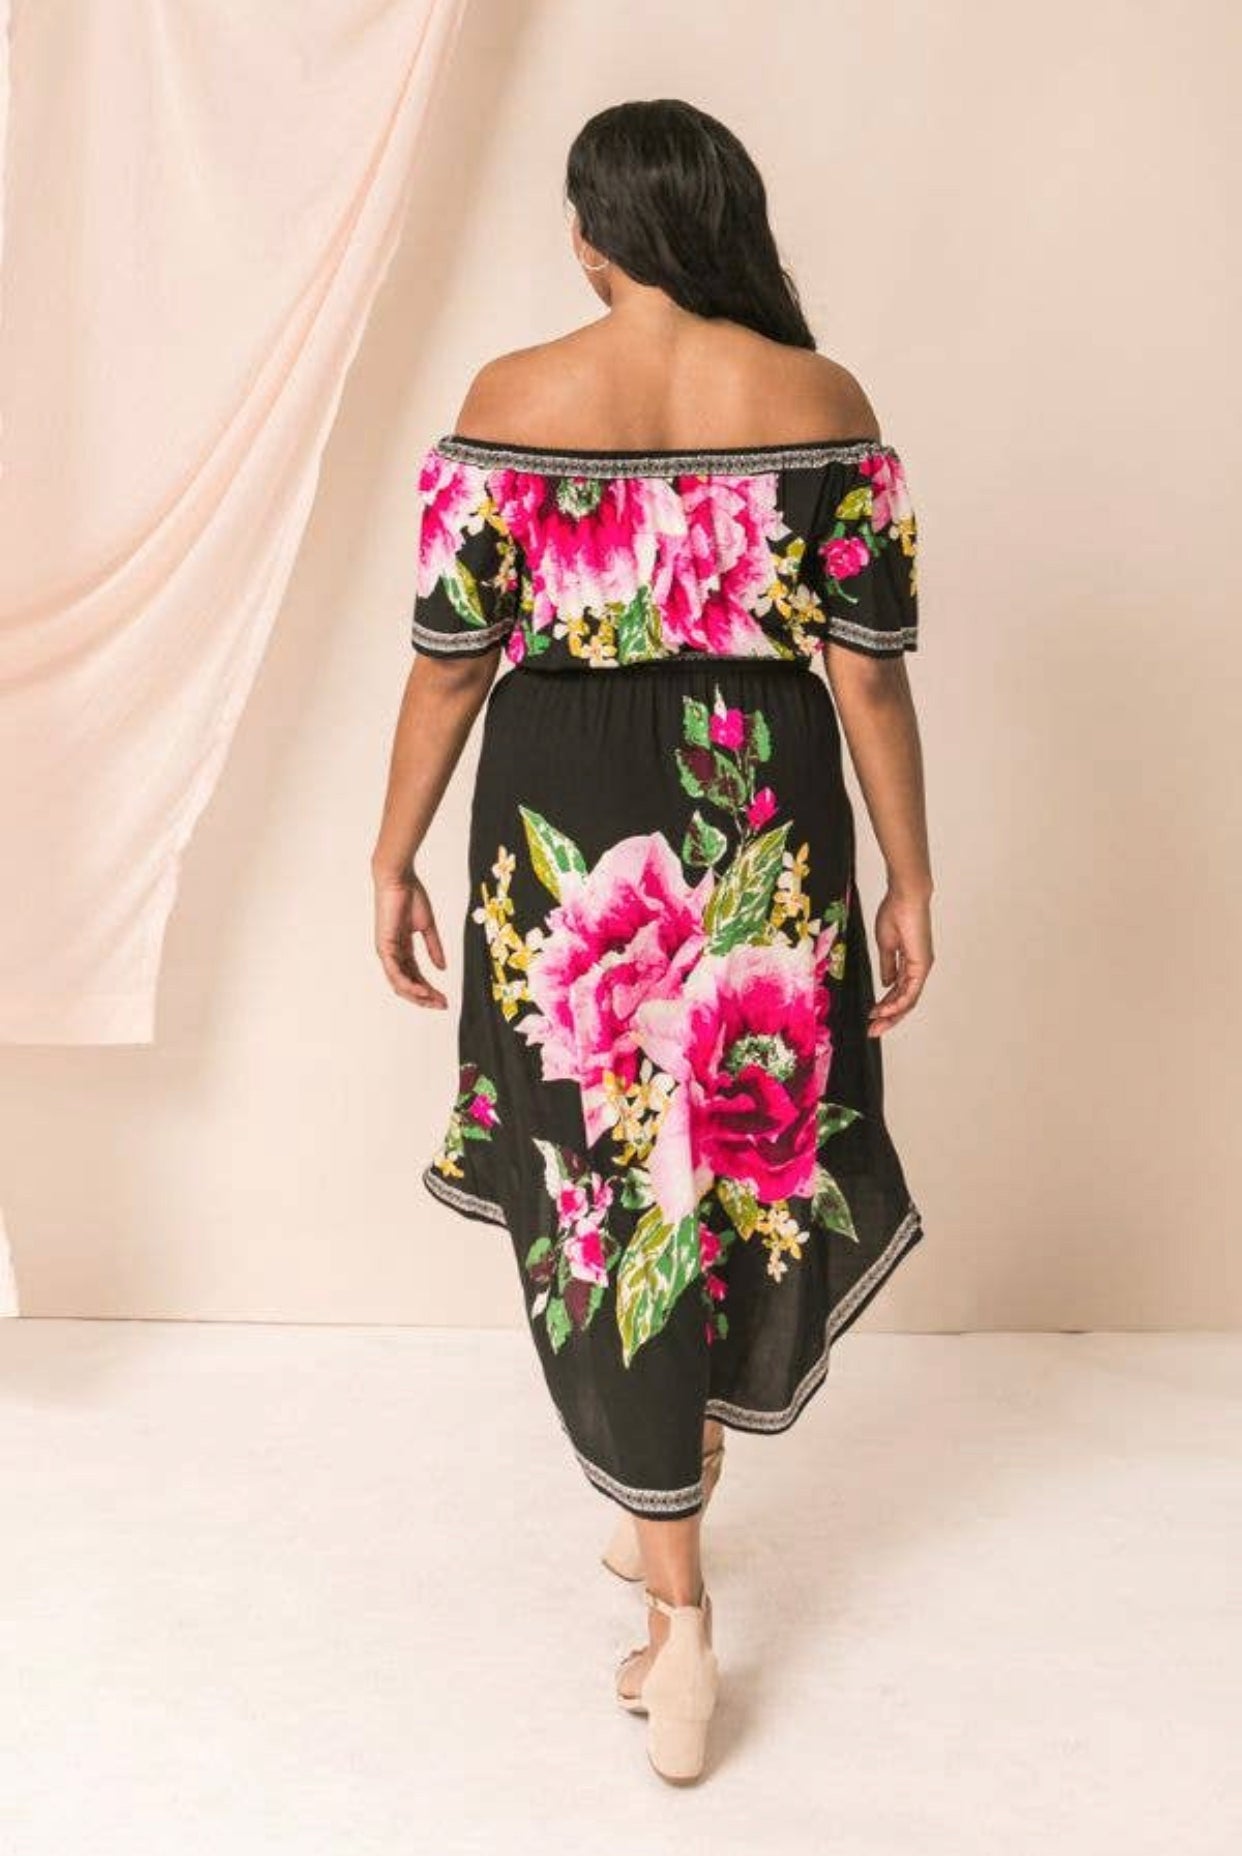 Plus Size Fashion Off Shoulder Floral Dress, Sizes 1X - 3X